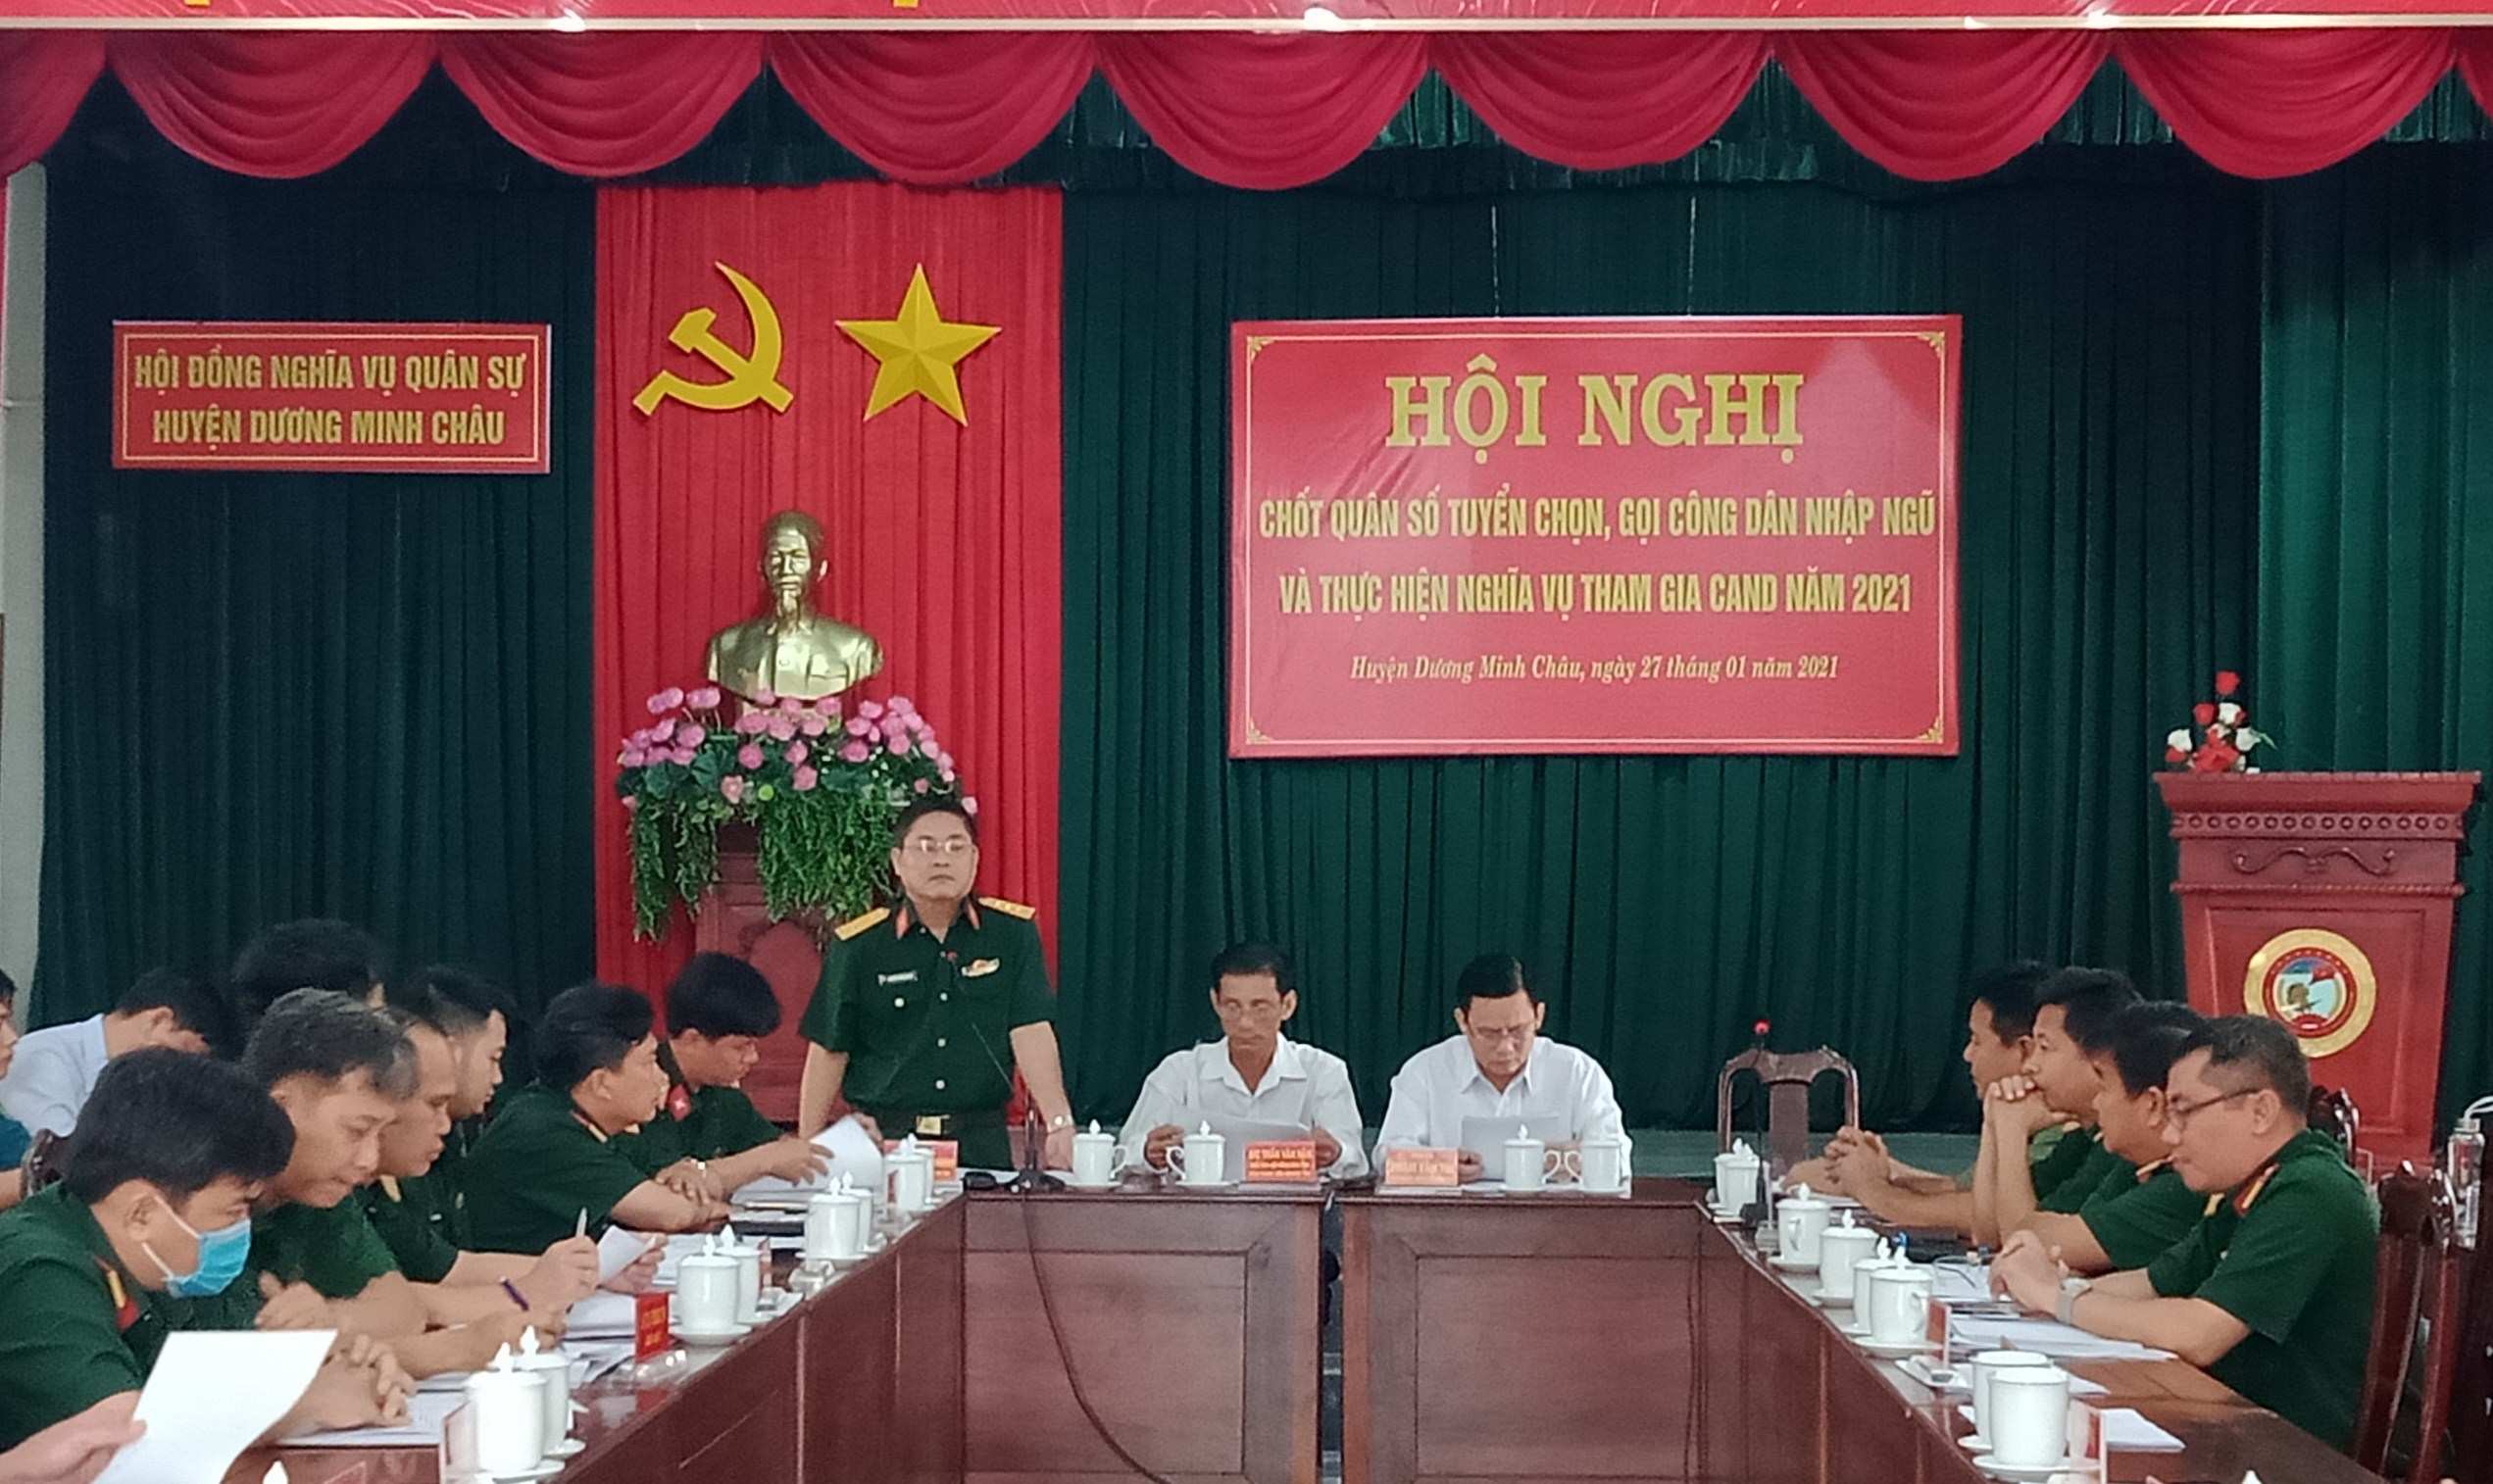 Huyện Dương Minh Châu: Chốt quân số tuyển chọn, gọi công dân nhập ngũ và thực hiện nghĩa vụ tham gia công an nhân dân năm 2021